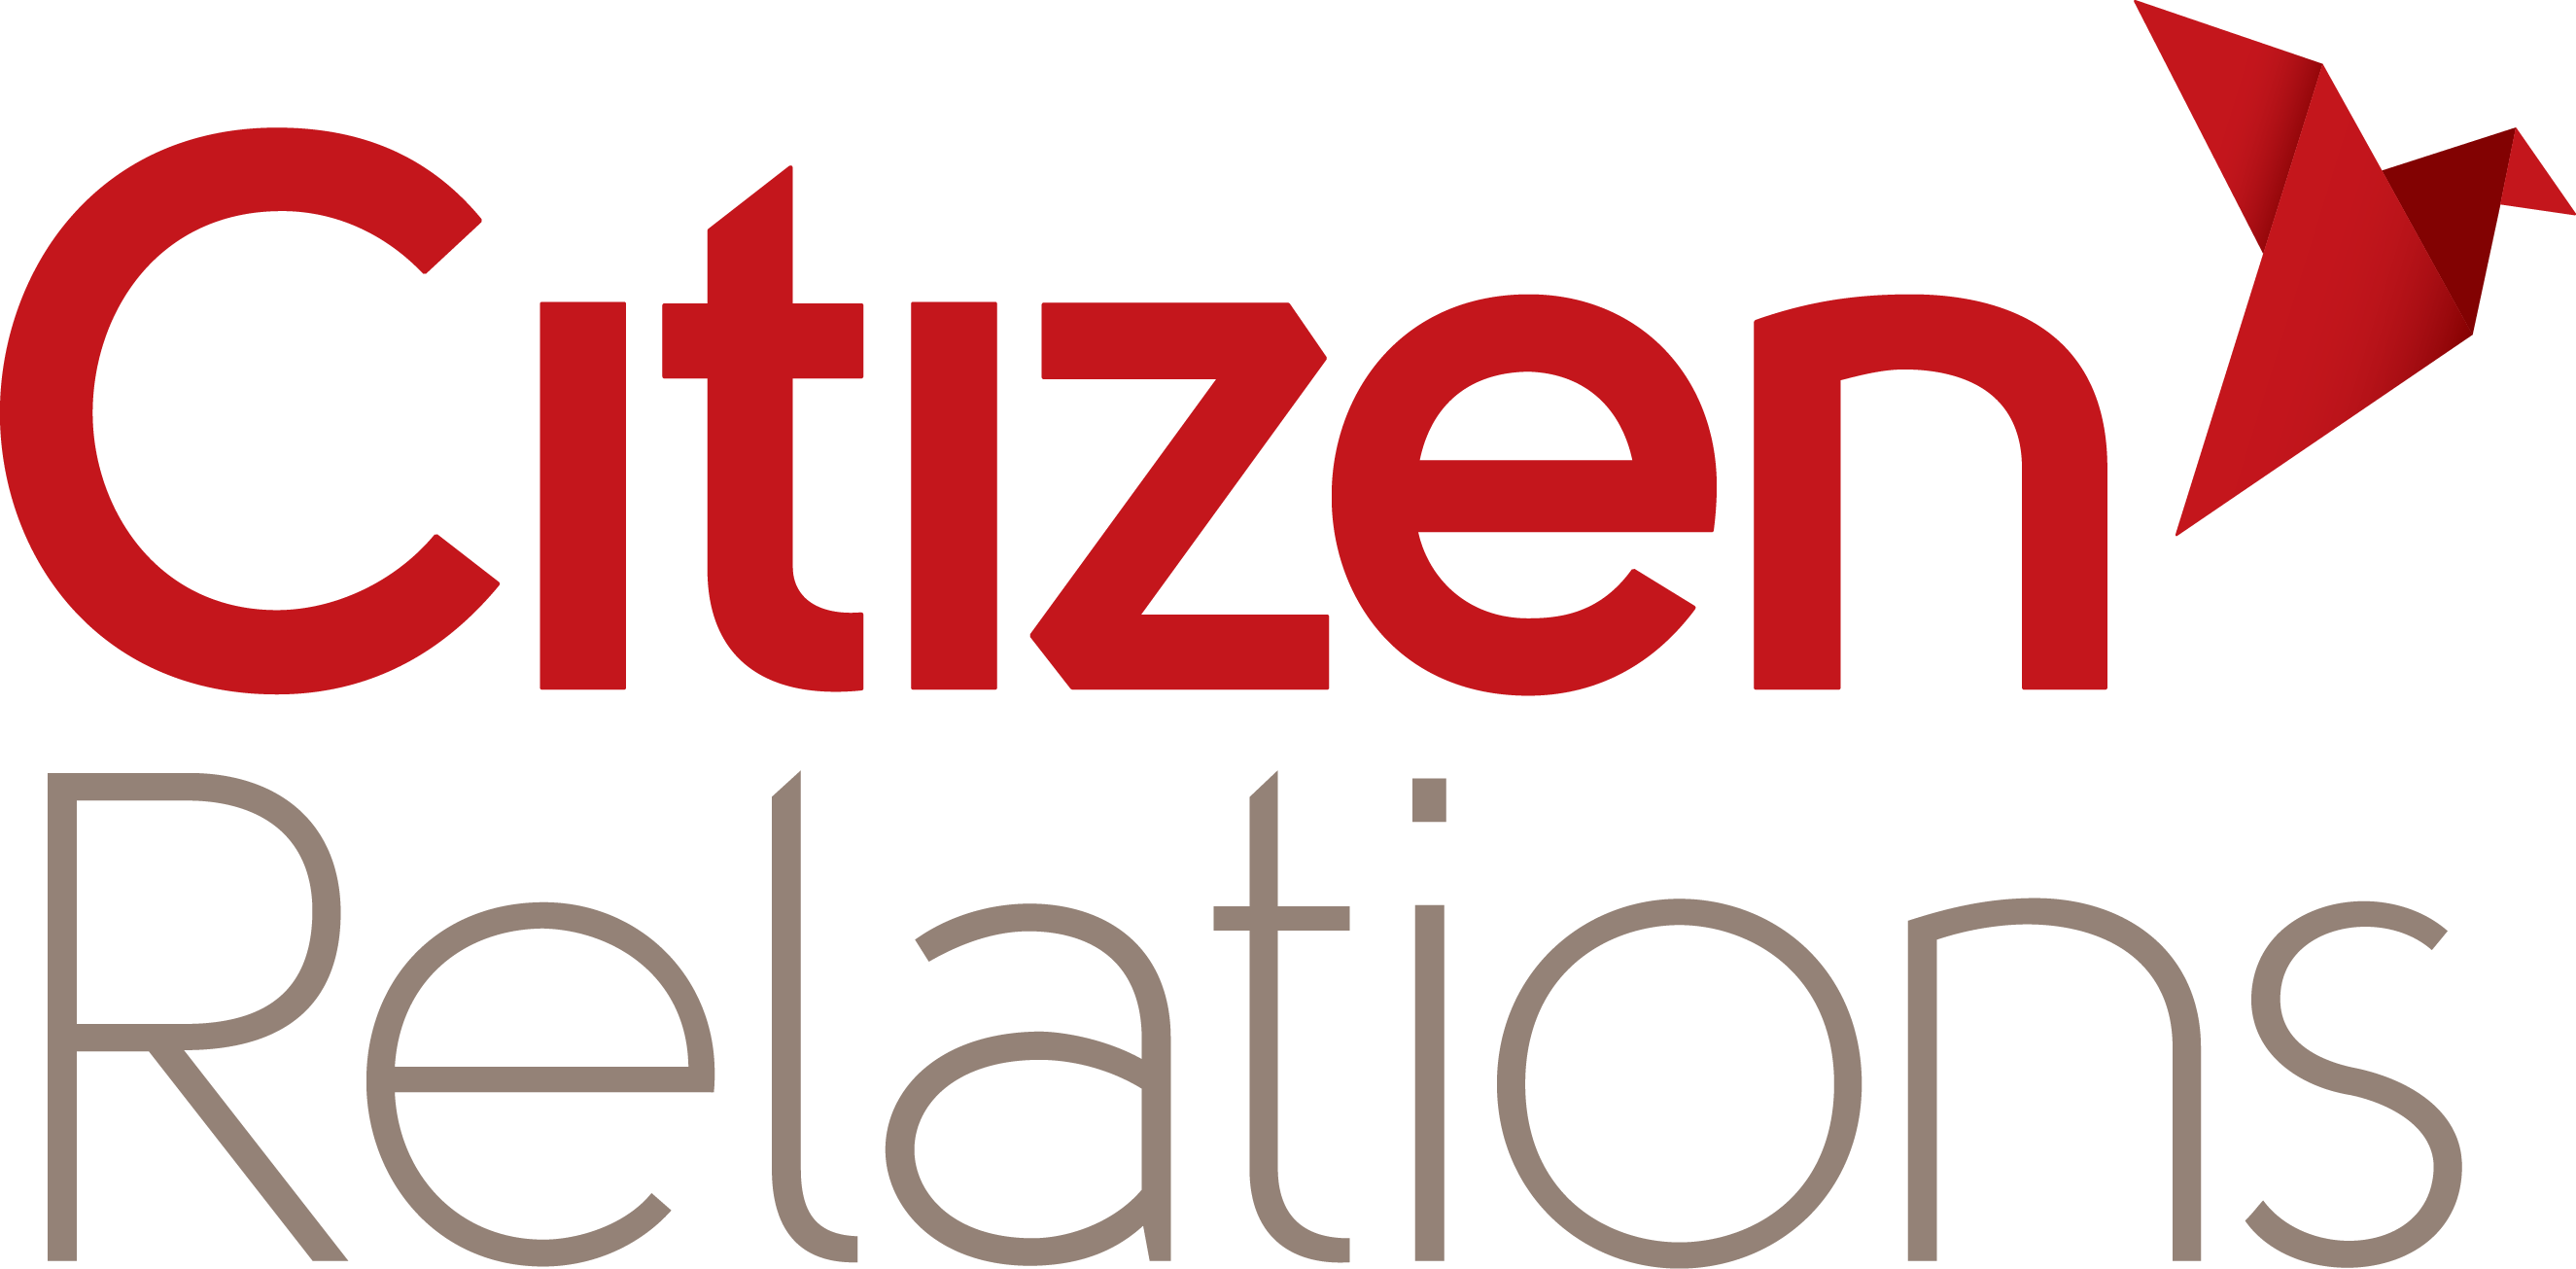 Citizen Relations - PR Council